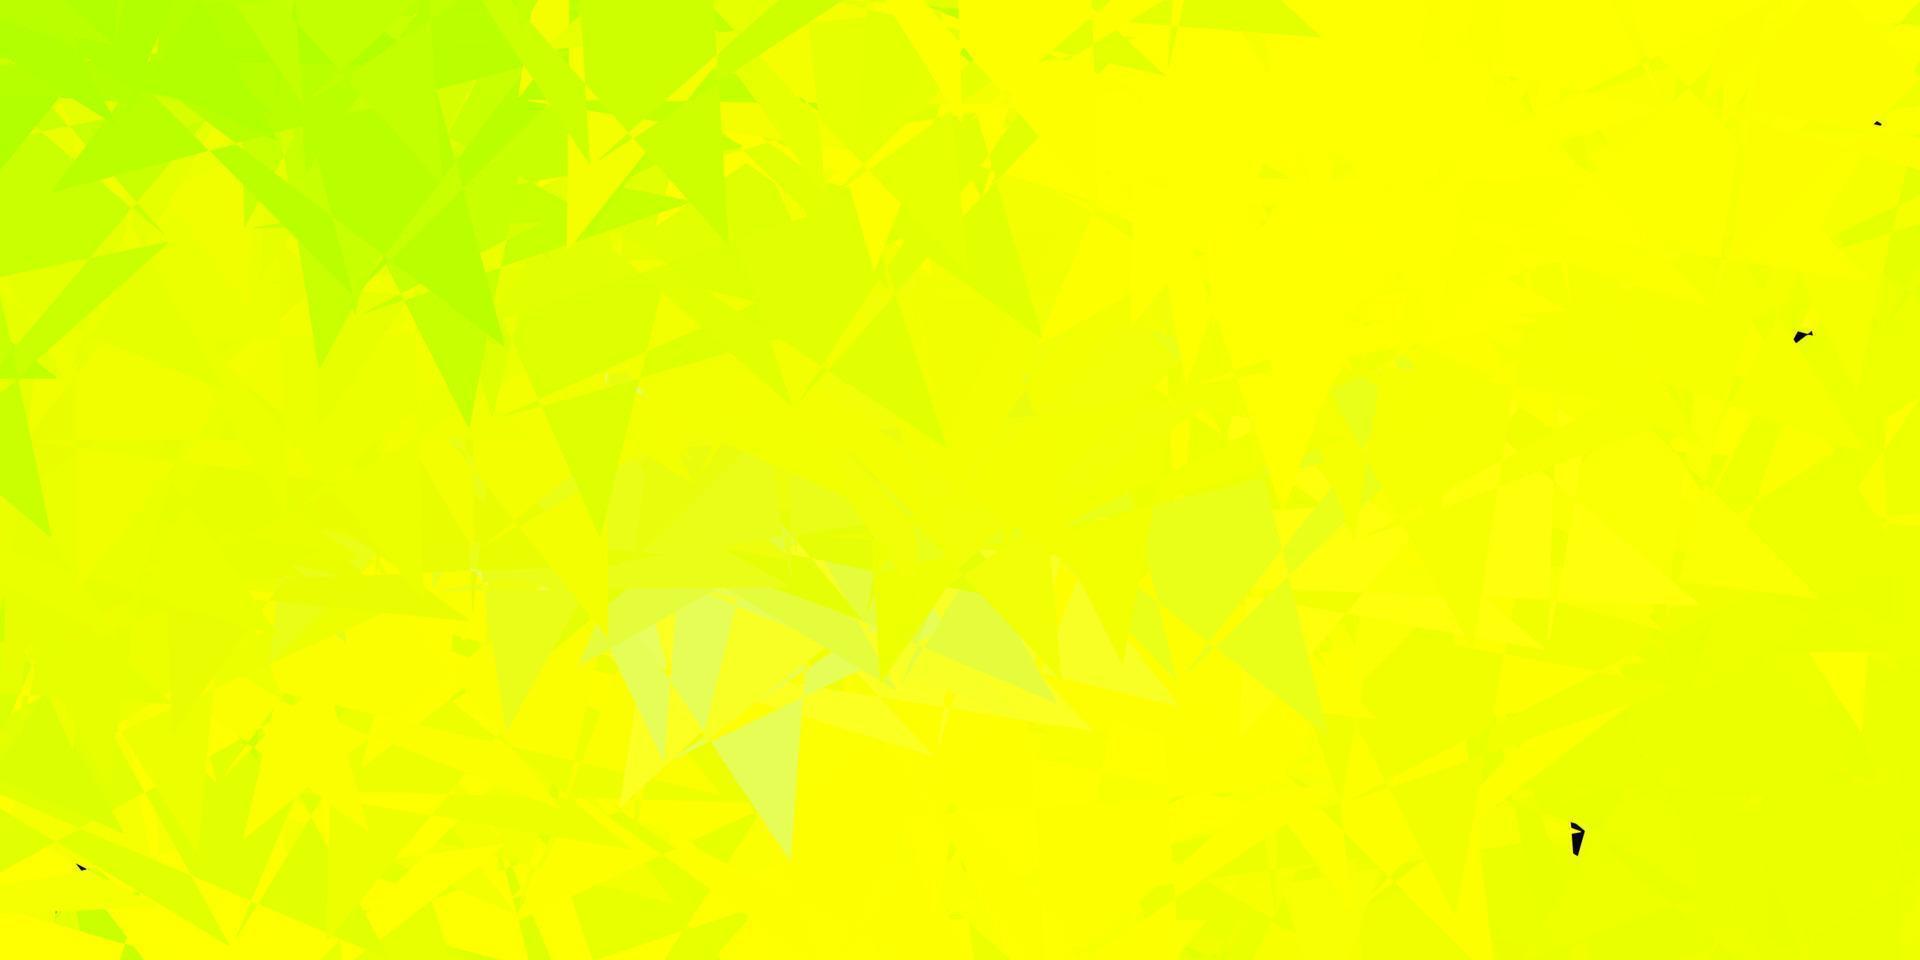 ljusgrön, gul vektorstruktur med slumpmässiga trianglar. vektor